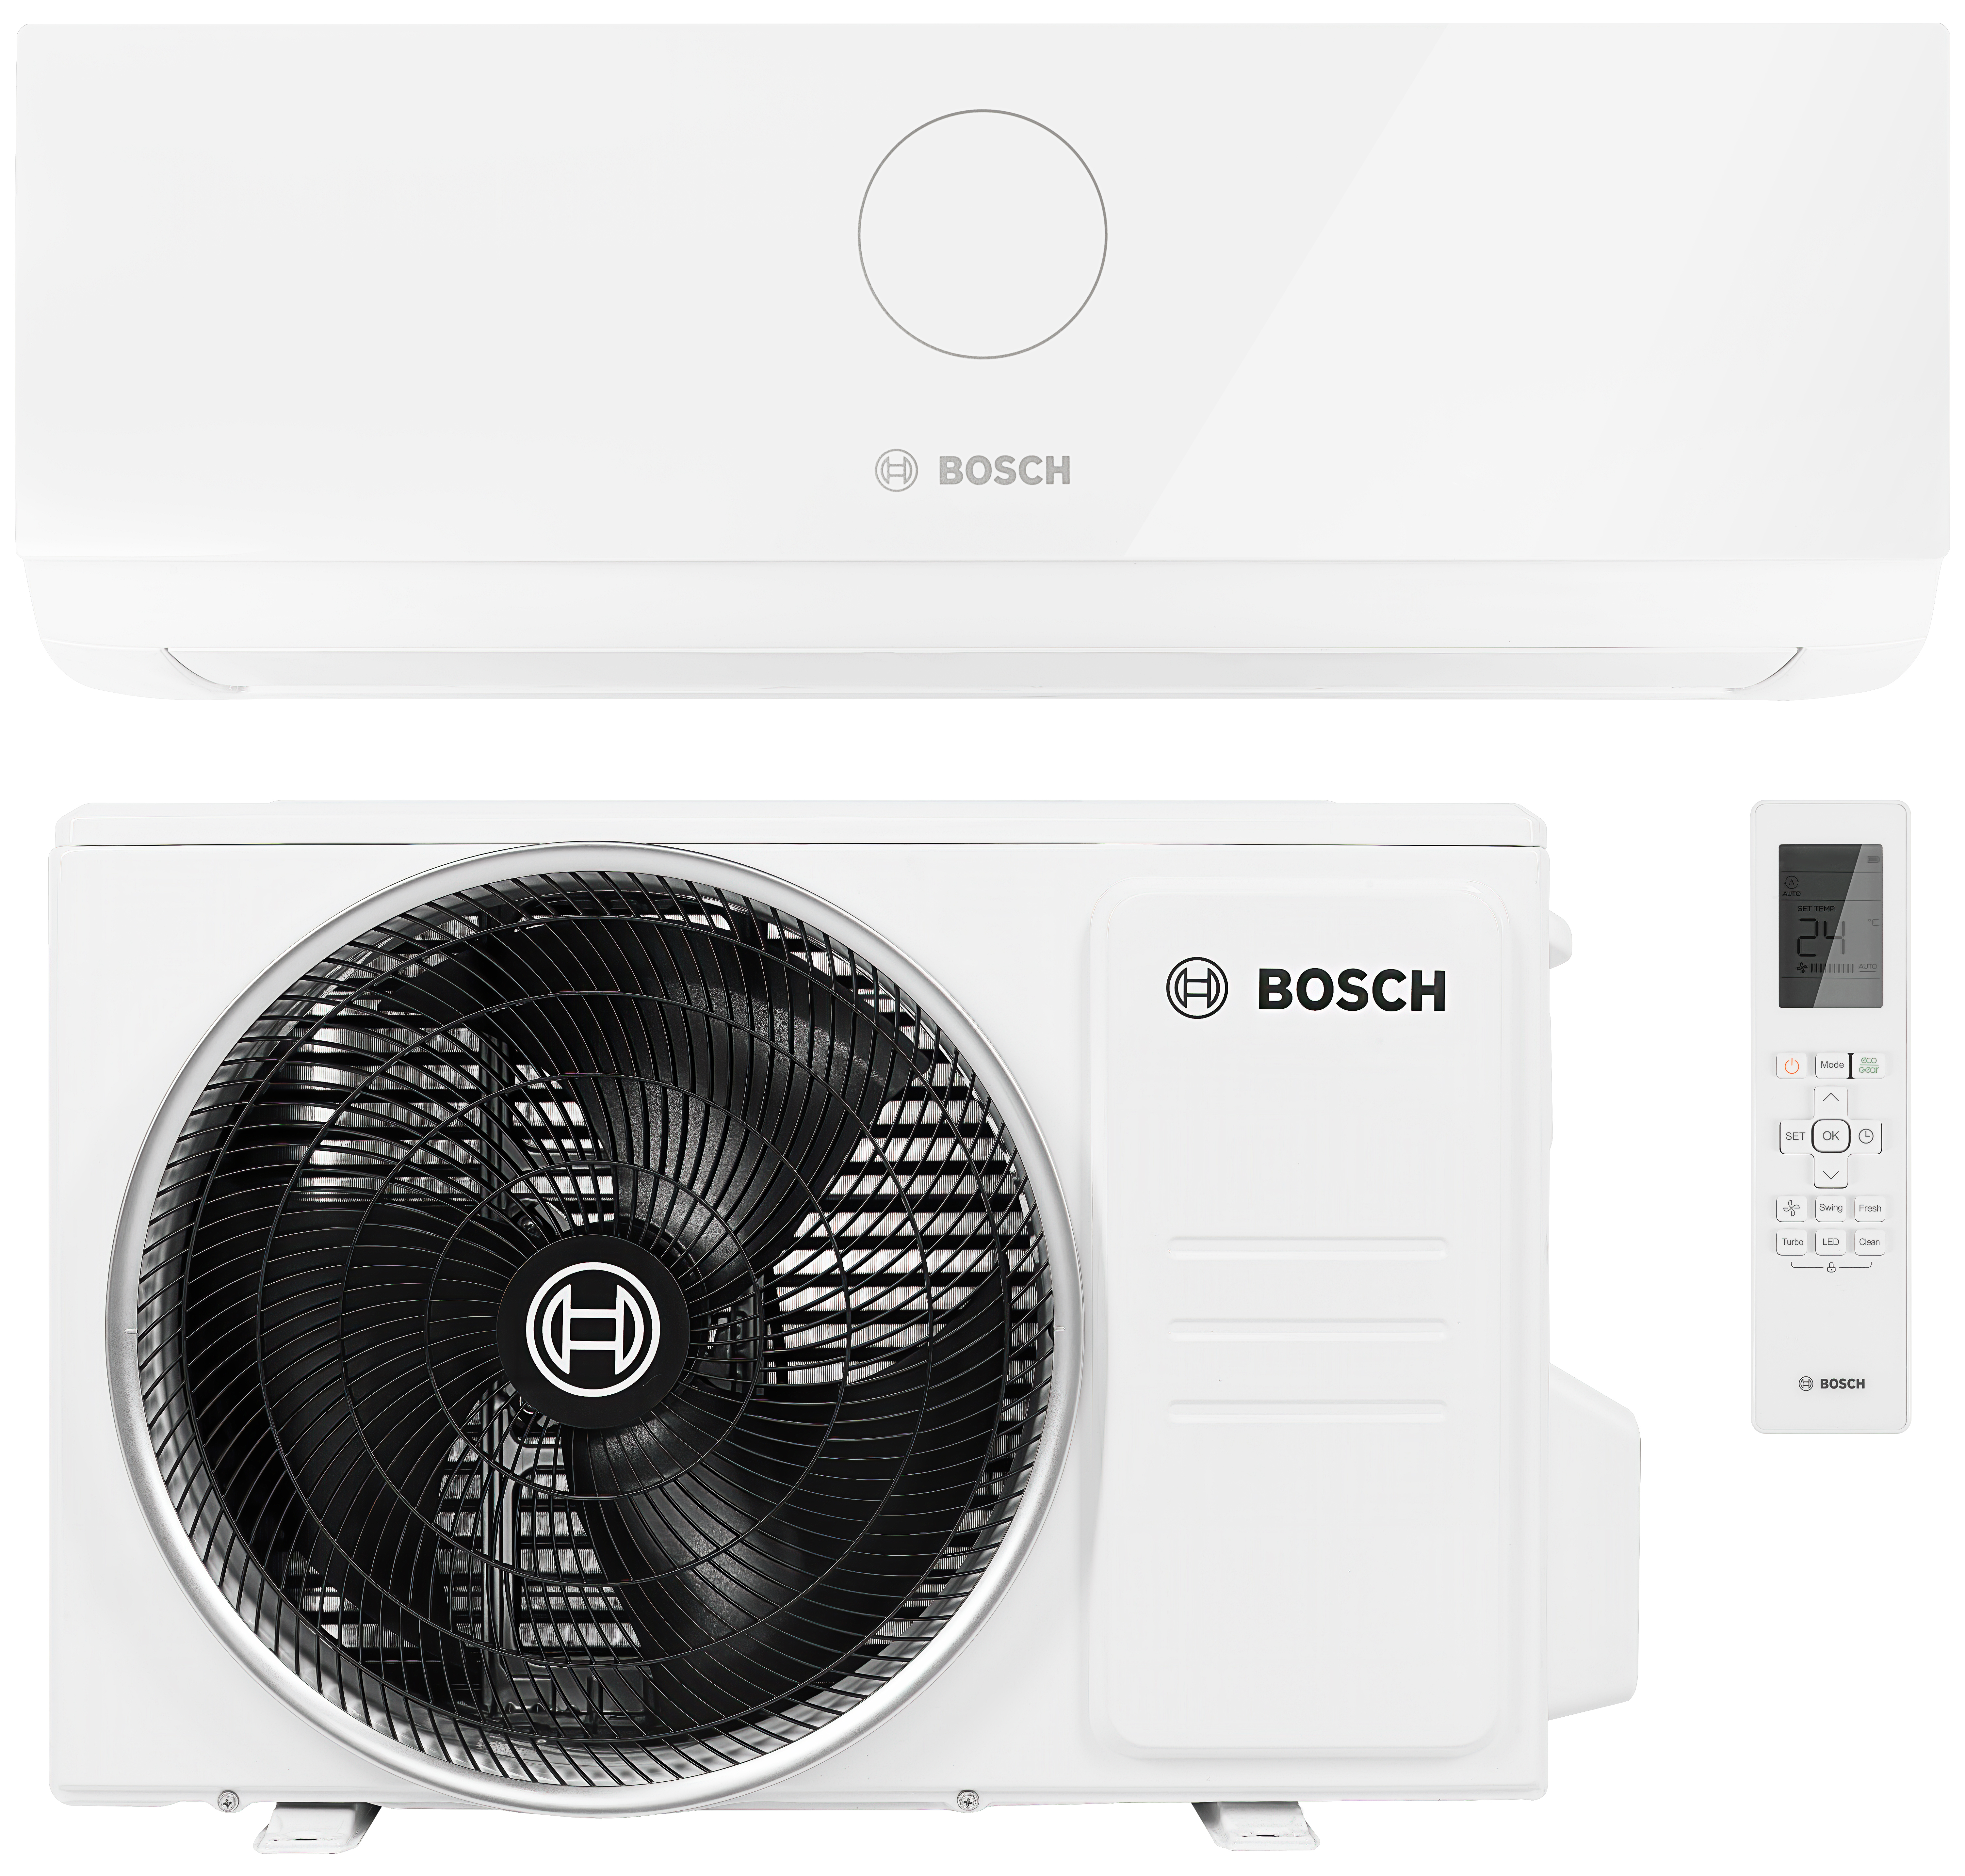 Отзывы кондиционер с самоочисткой Bosch Climate CL3000i 26 E в Украине